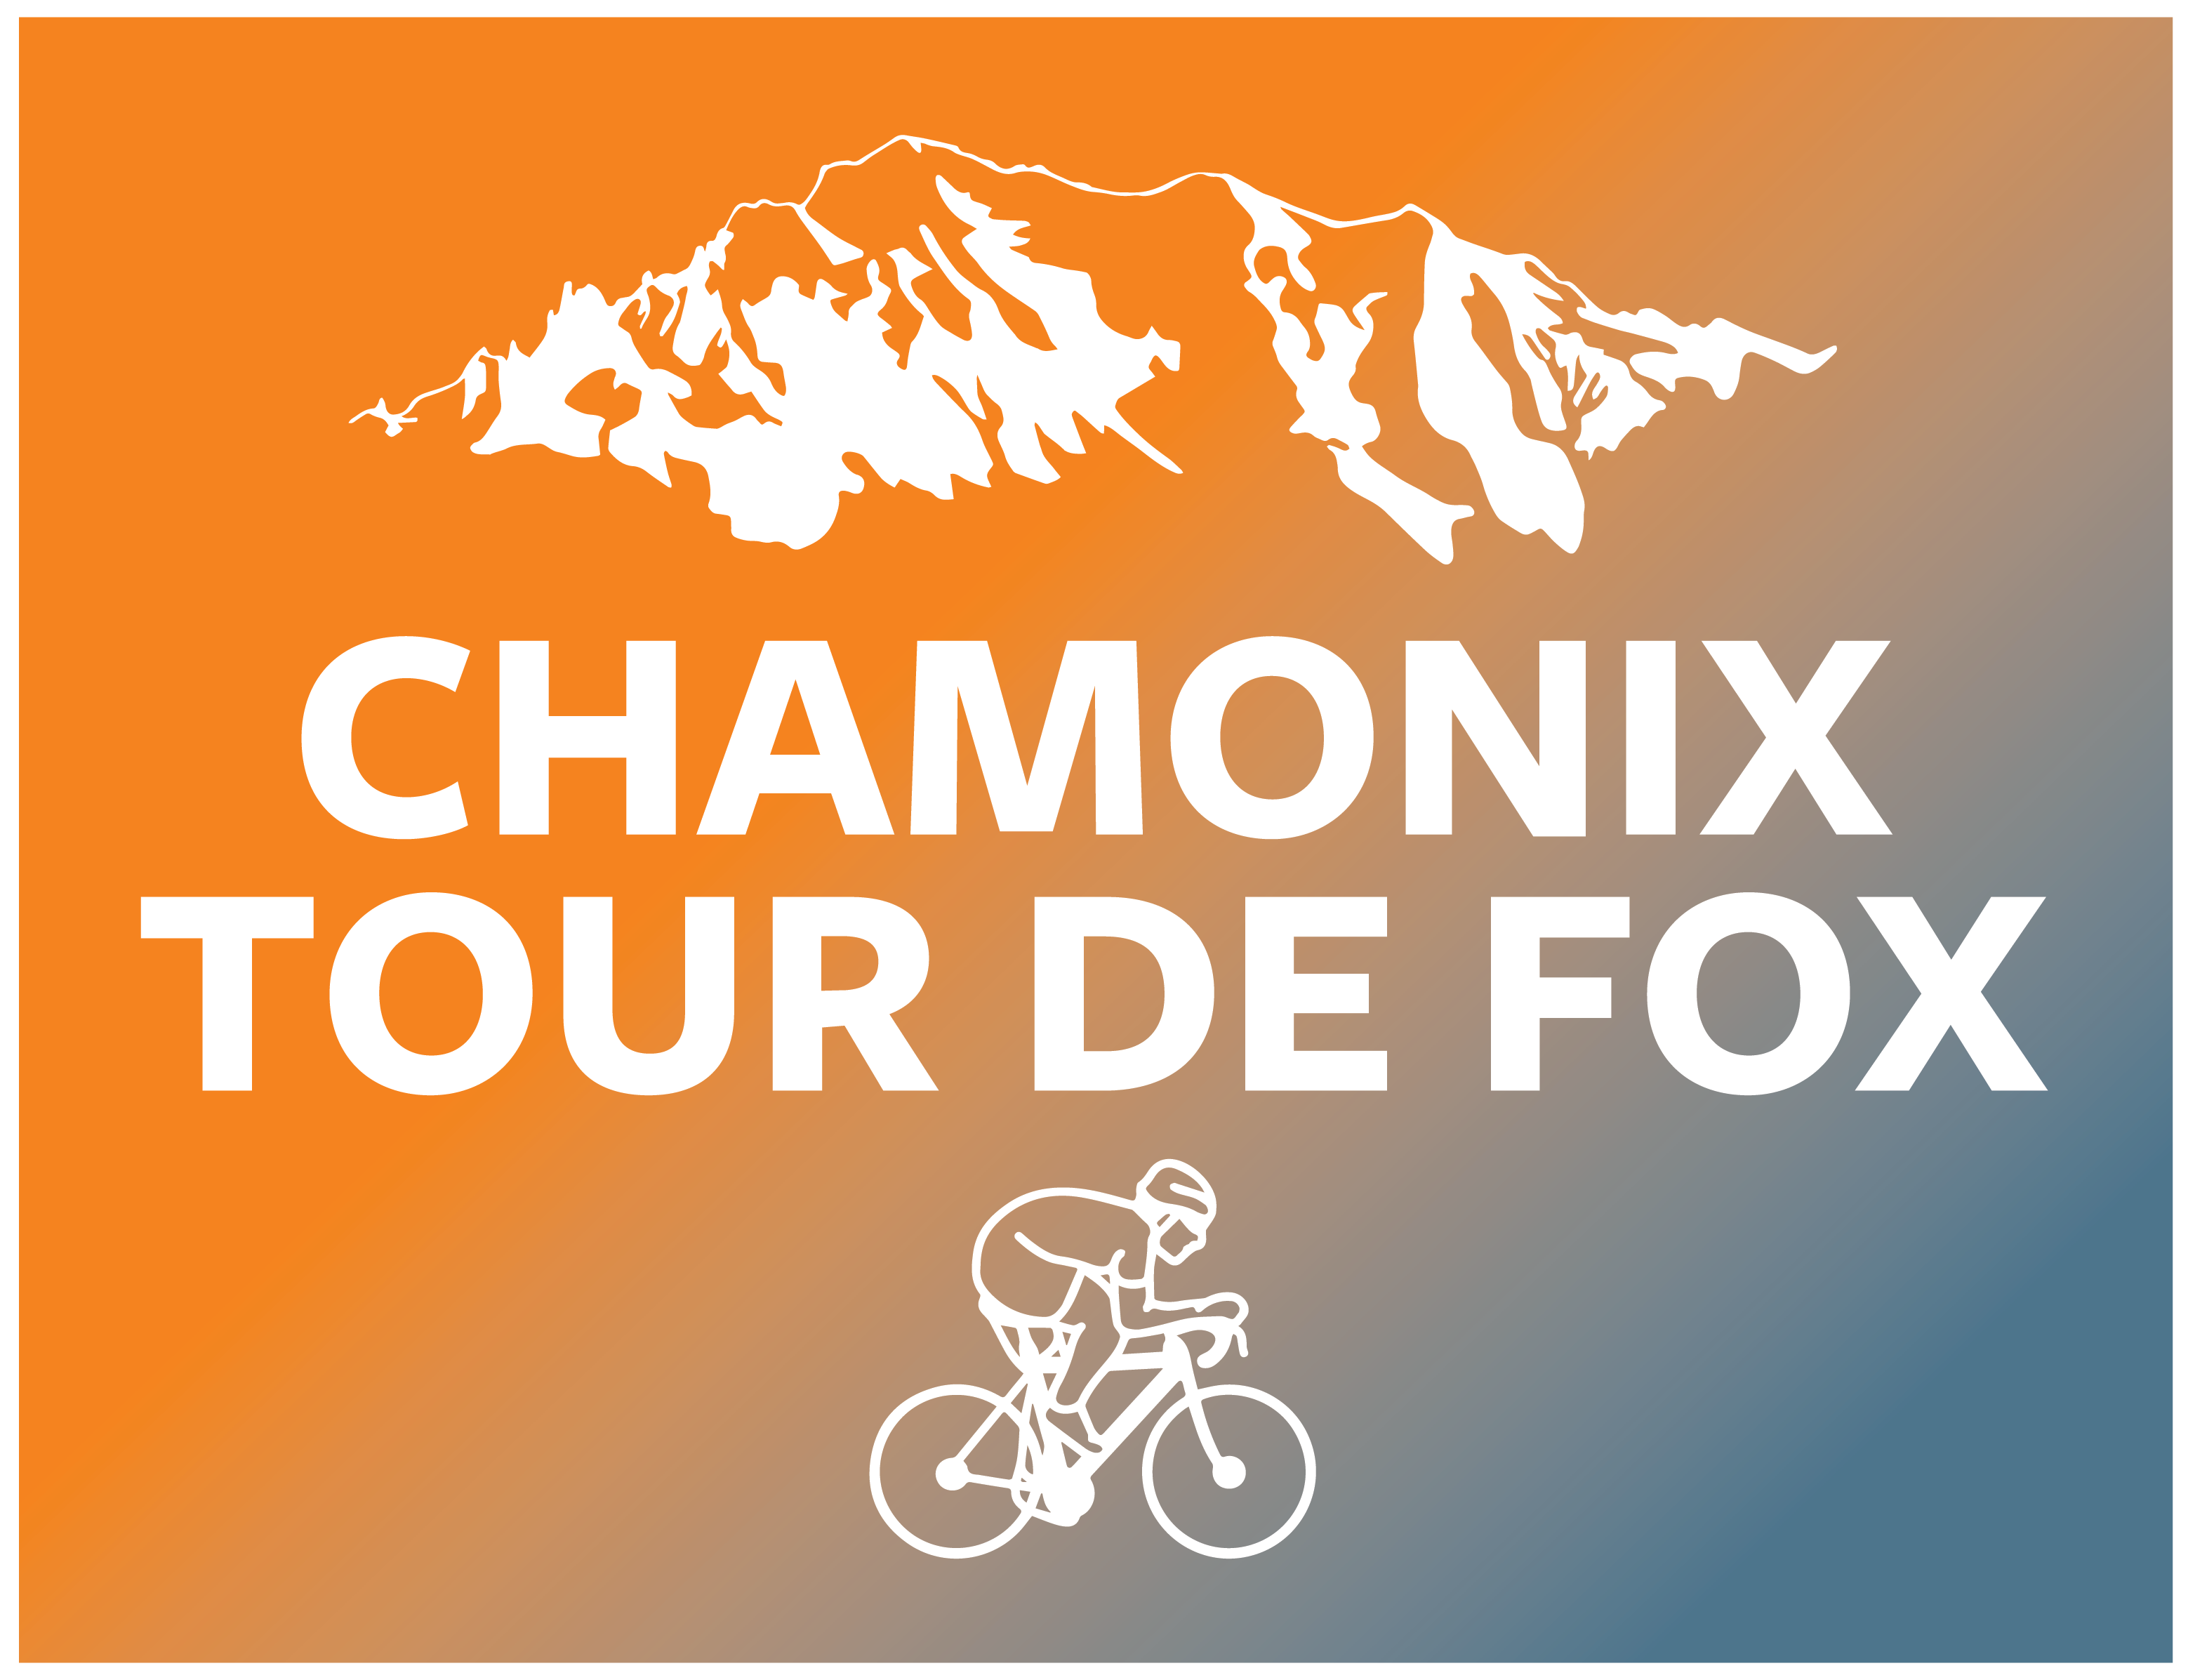 Profile image for 2024 Chamonix Tour de Fox event.